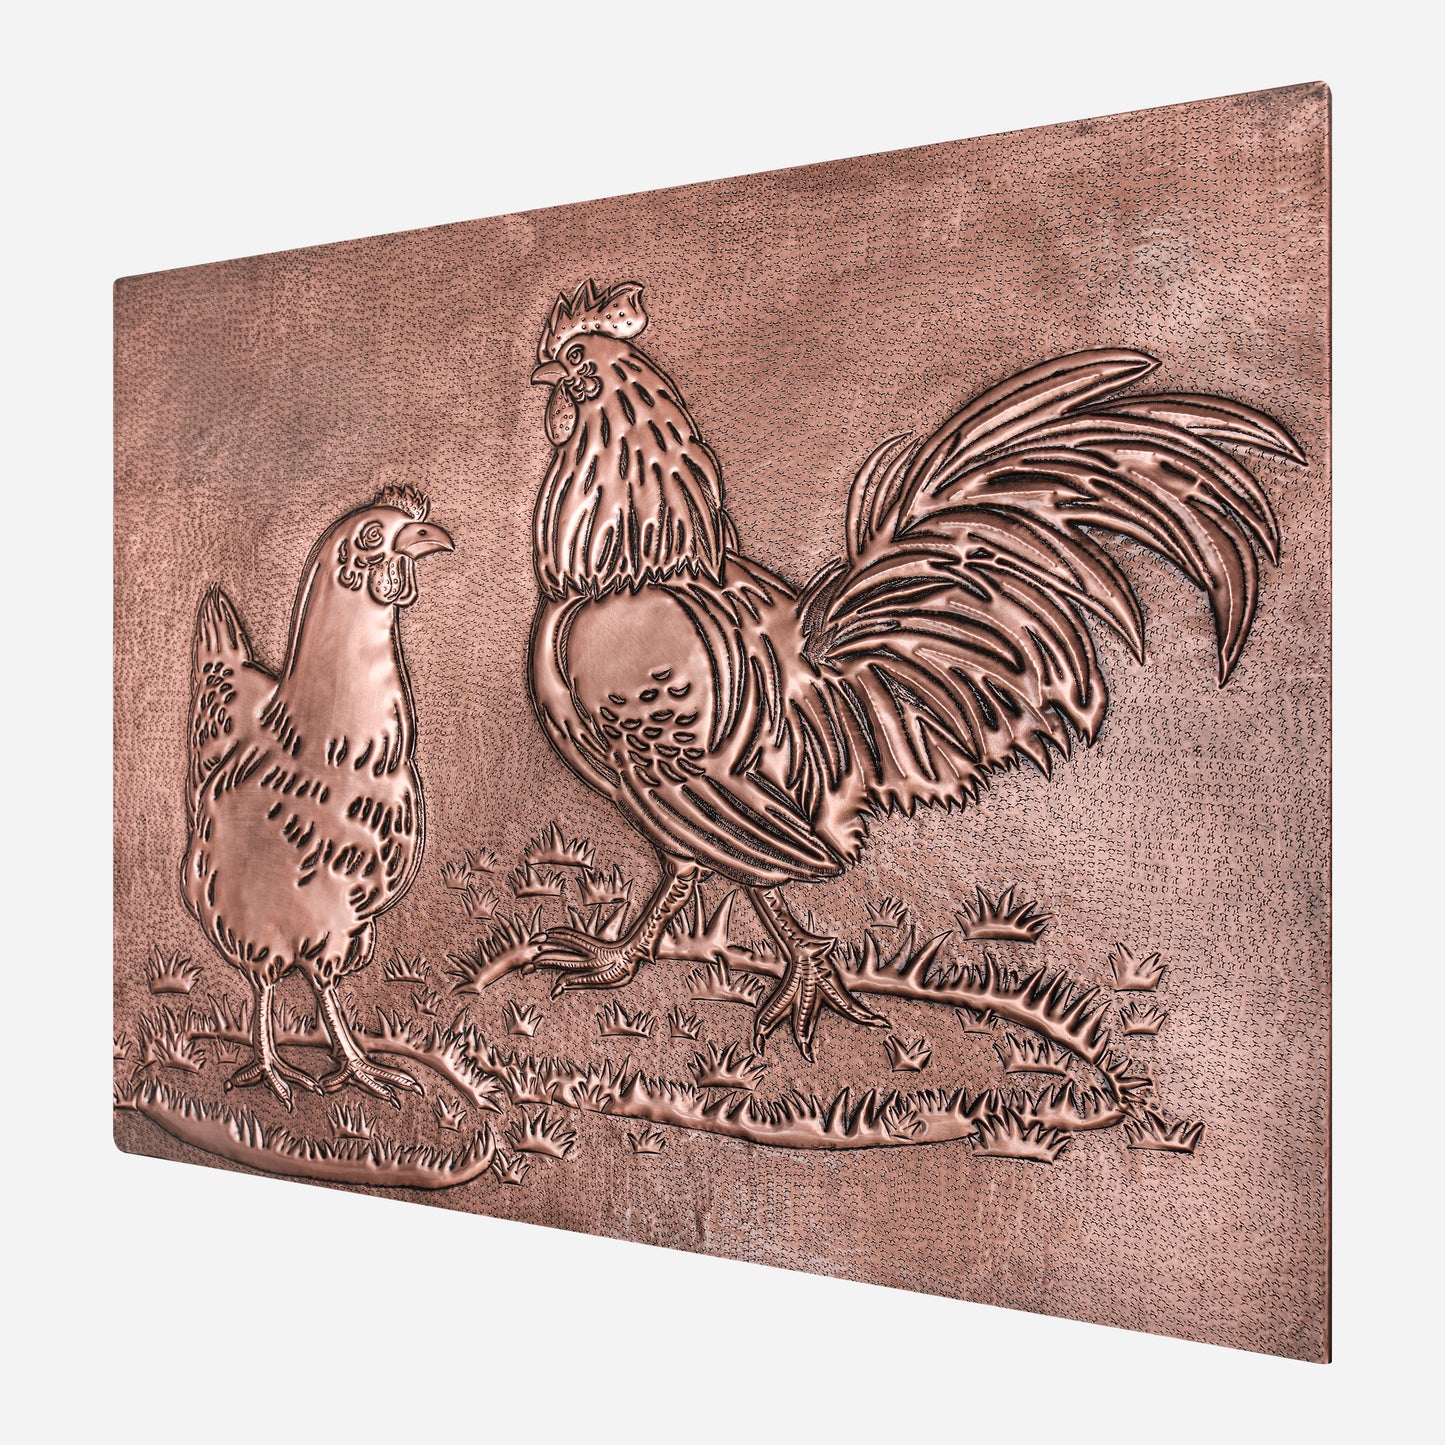 Rooster and Chicken Kitchen Backsplash Tile - 24"x30" Copper